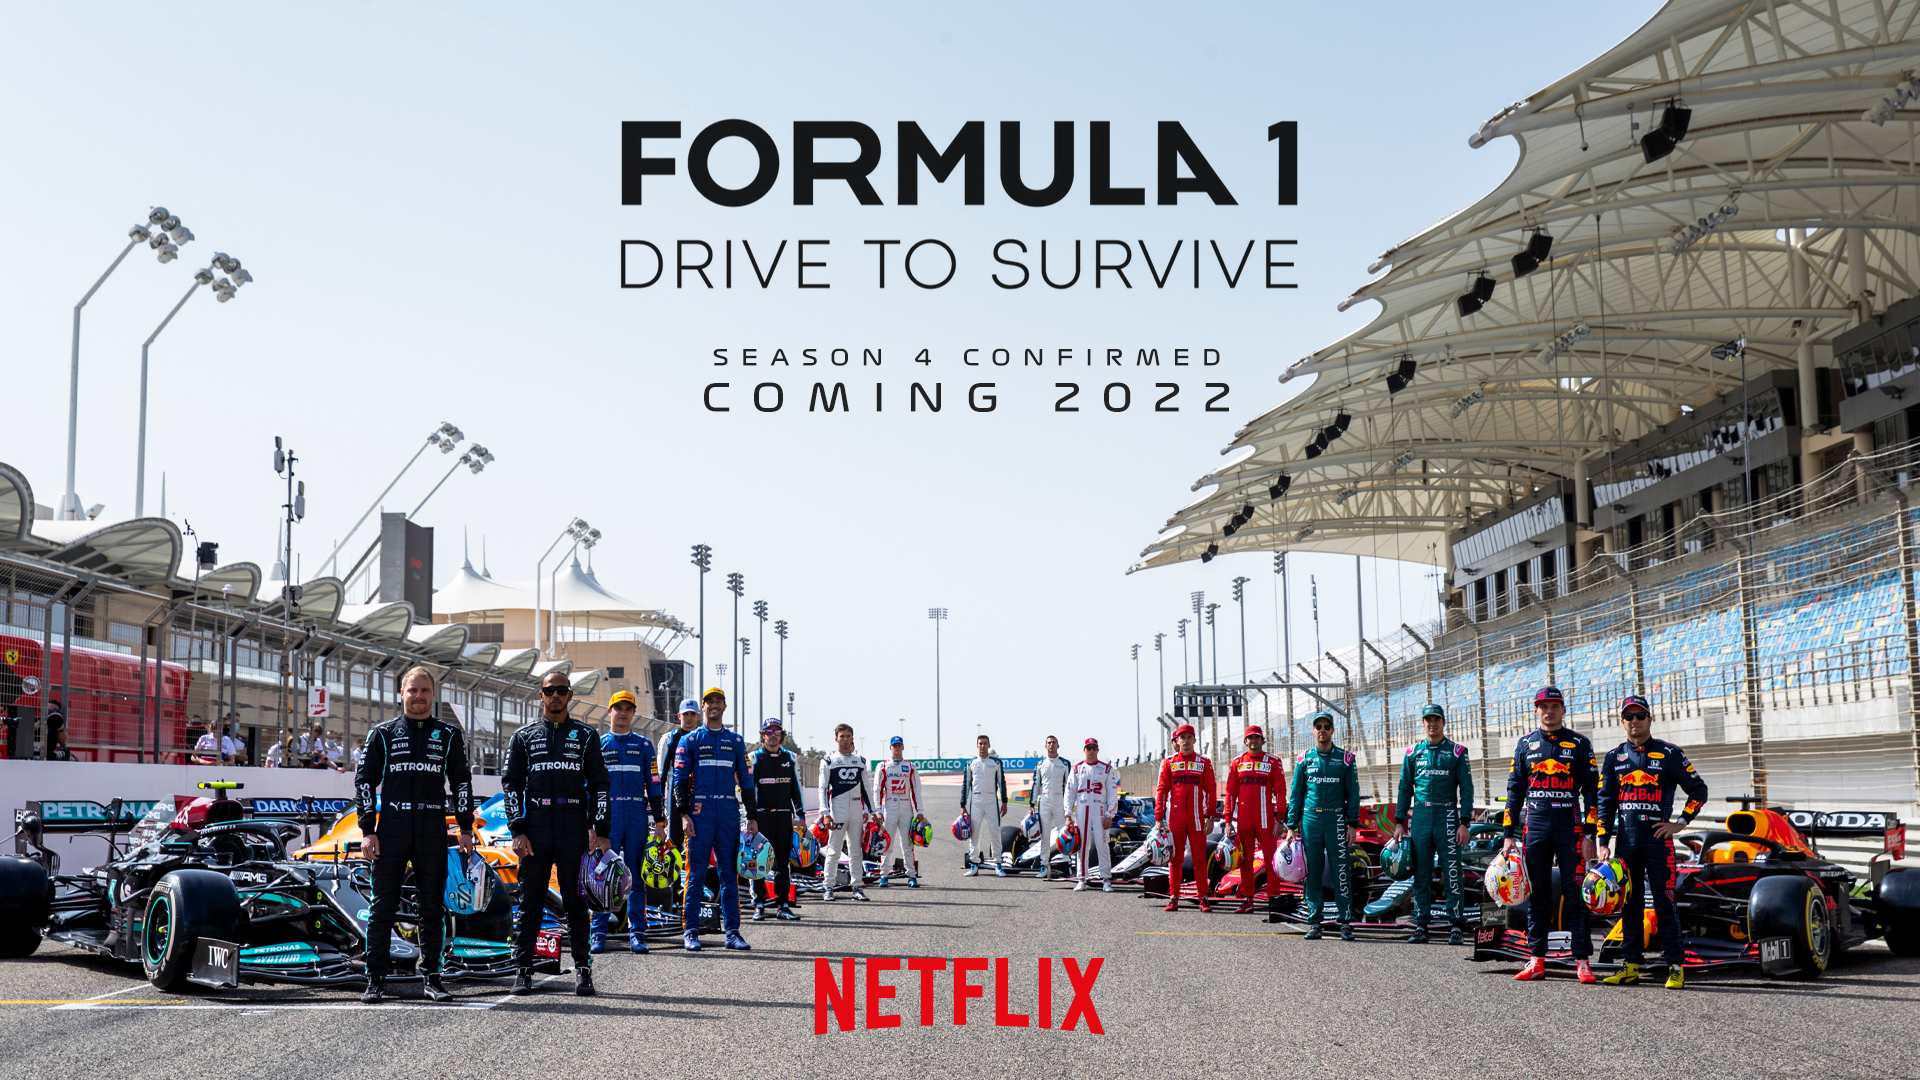 La temporada 4 de Drive To Survive llegará a Netflix en 2022